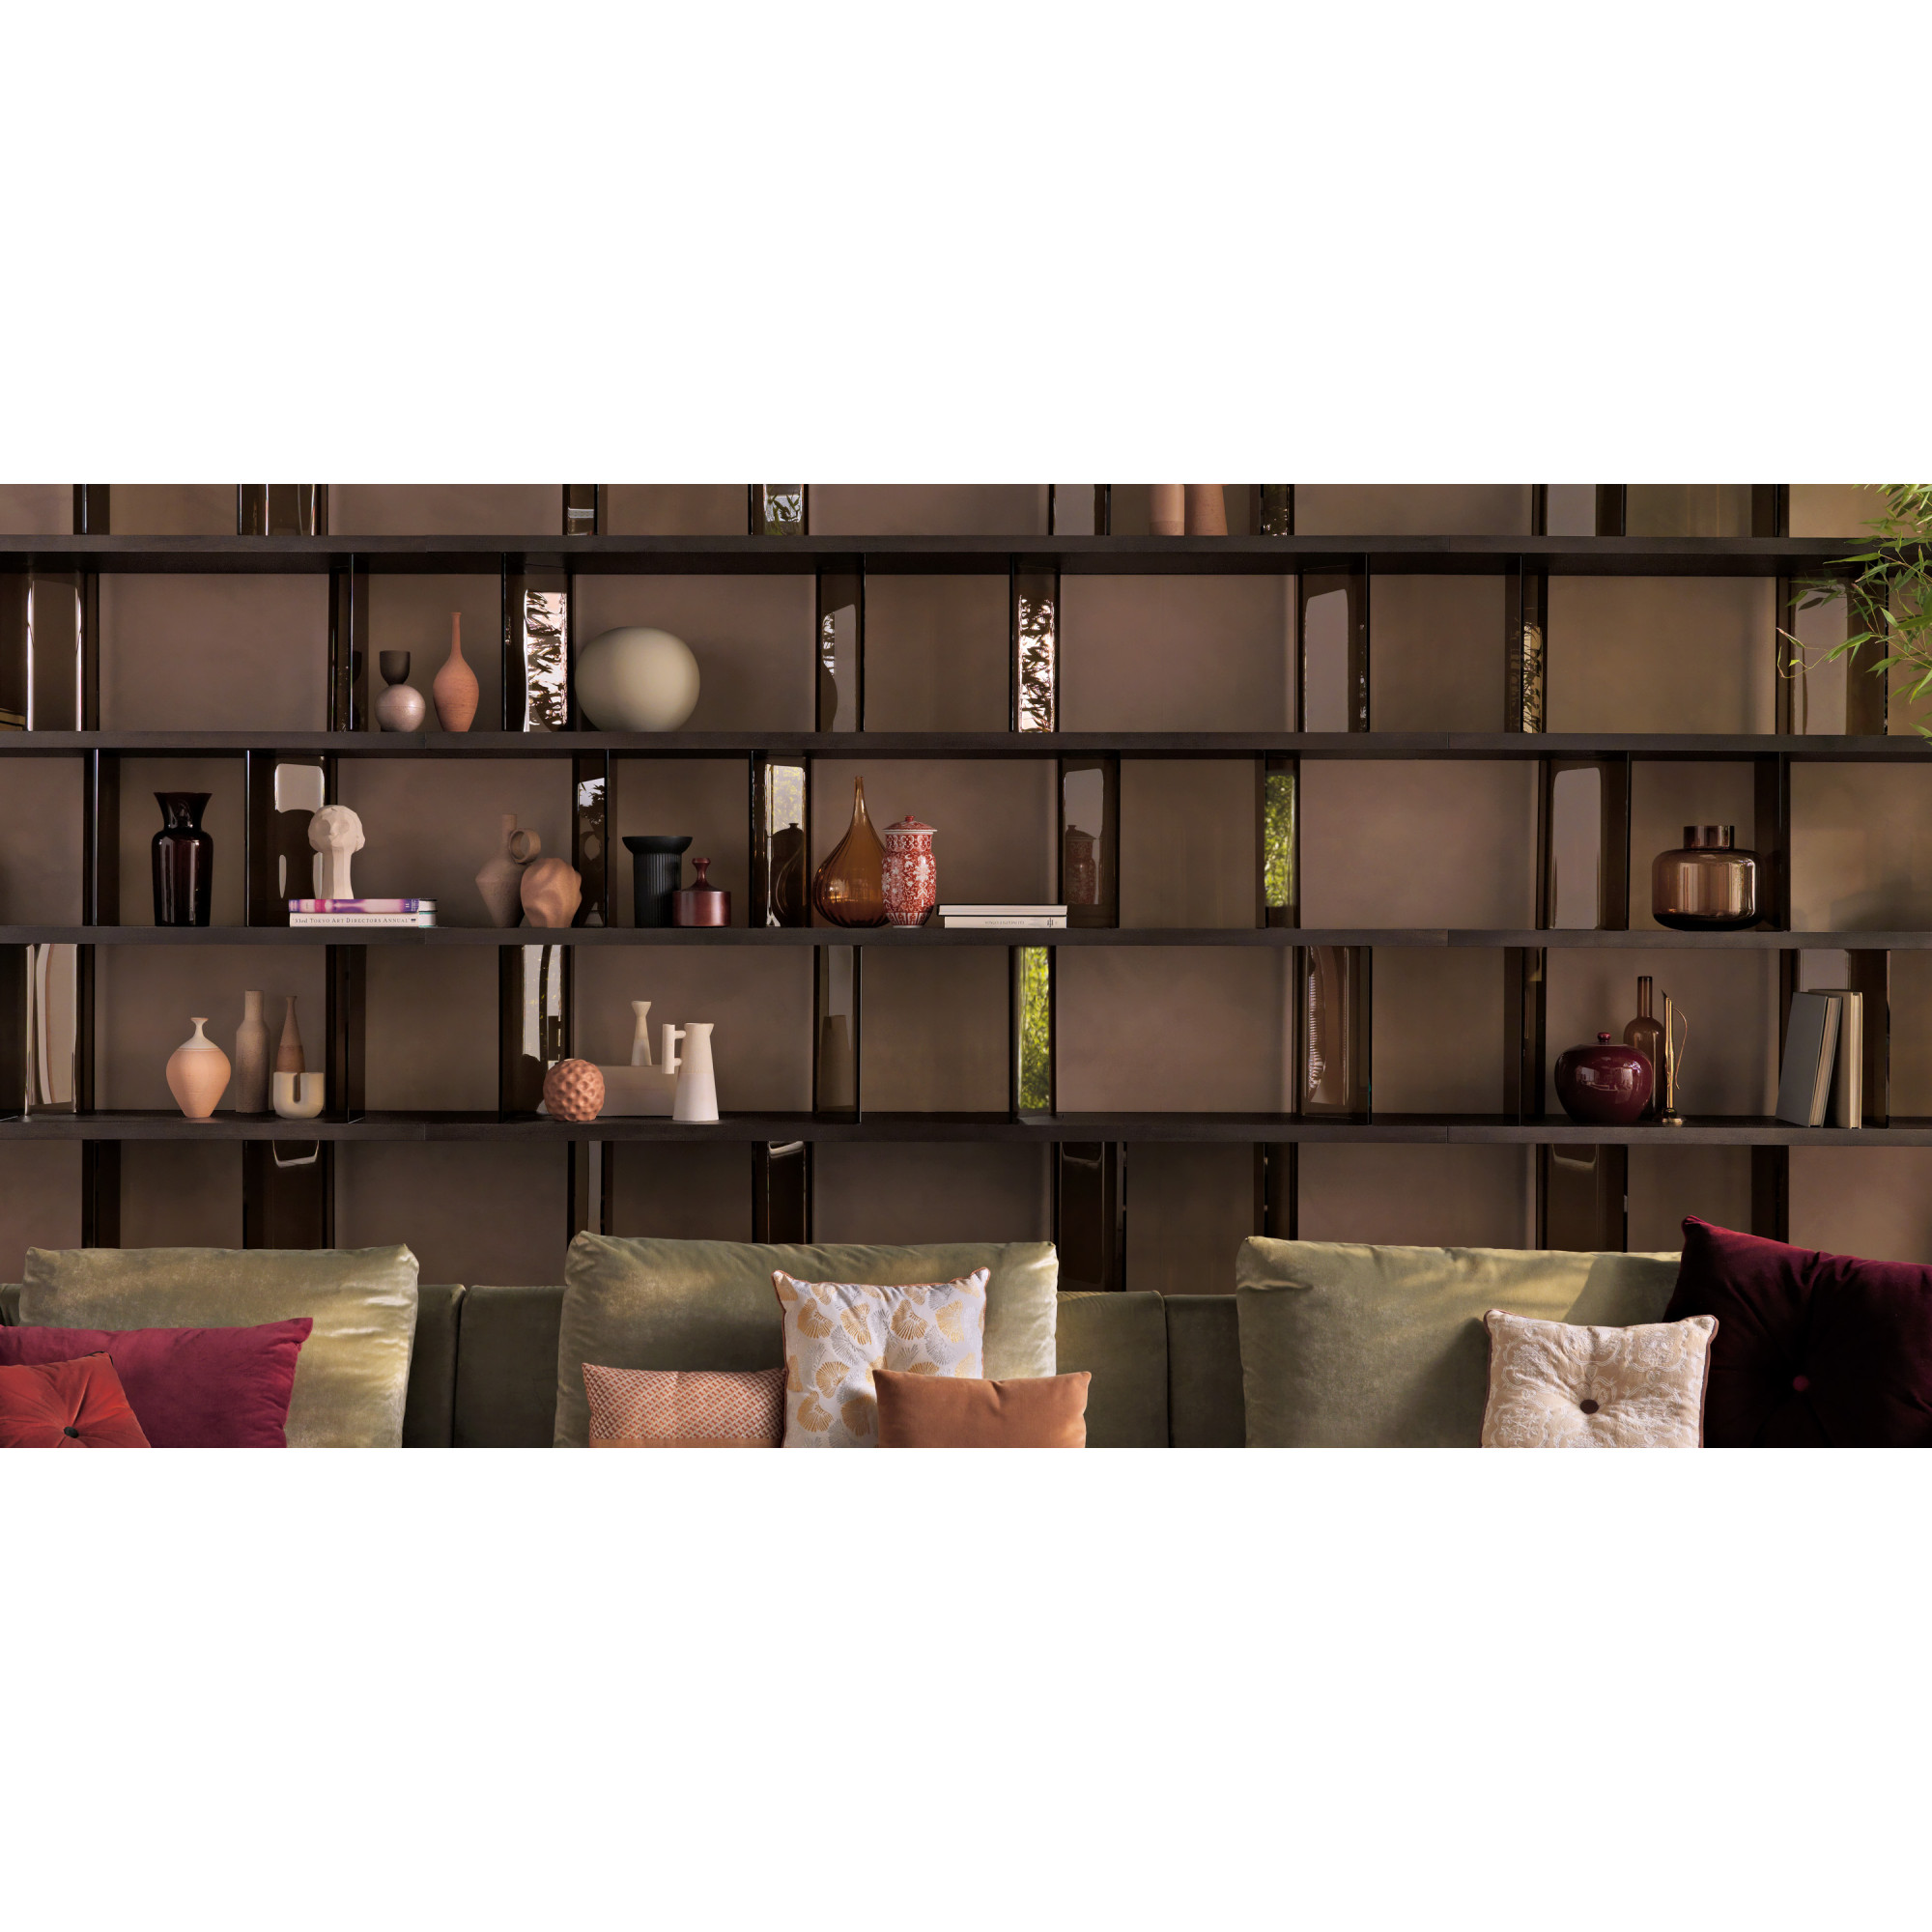 INORI, Bookcases, Living room